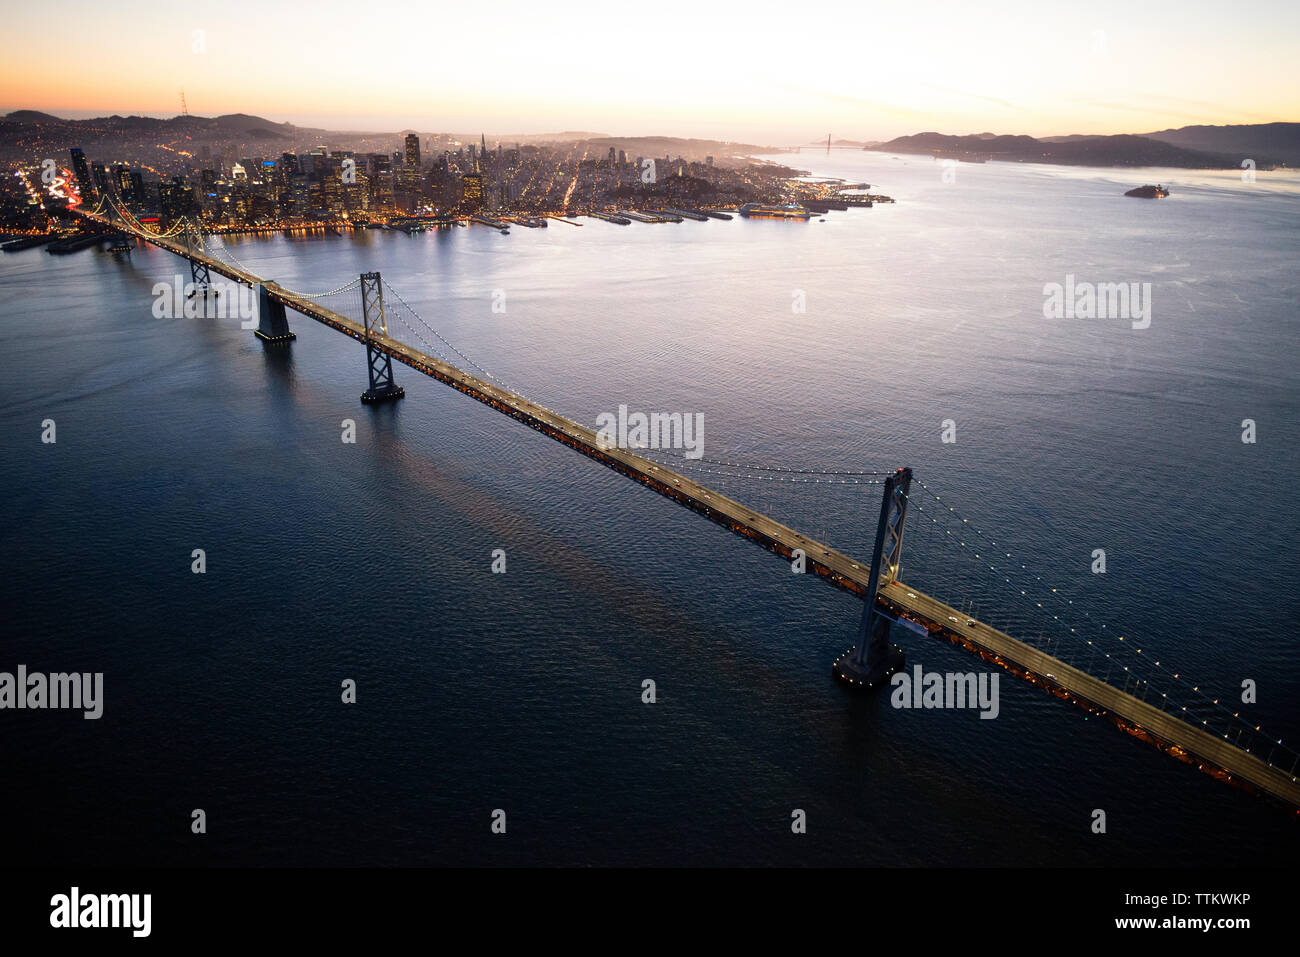 Aerial view of Bay Bridge and San Francisco bay Stock Photo